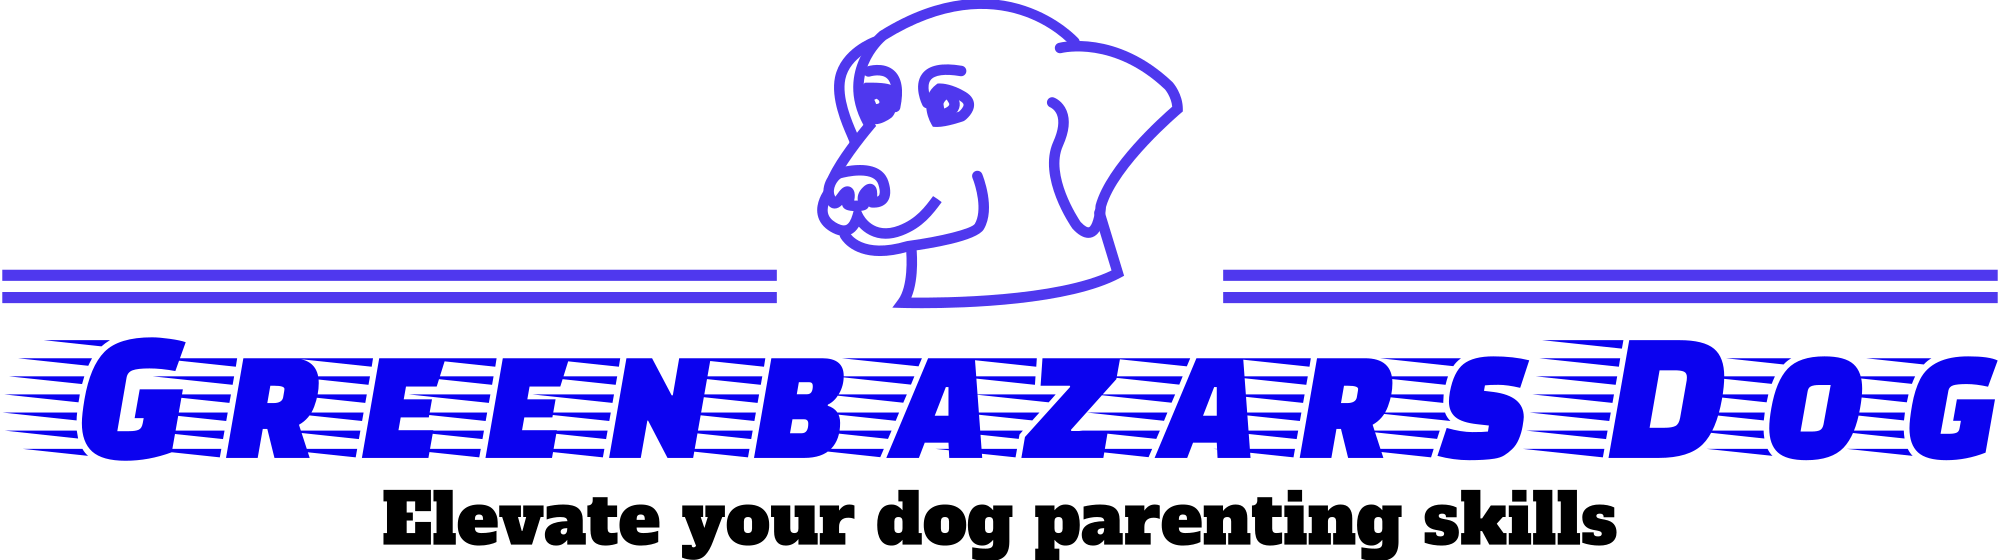 Greenbazars Dog